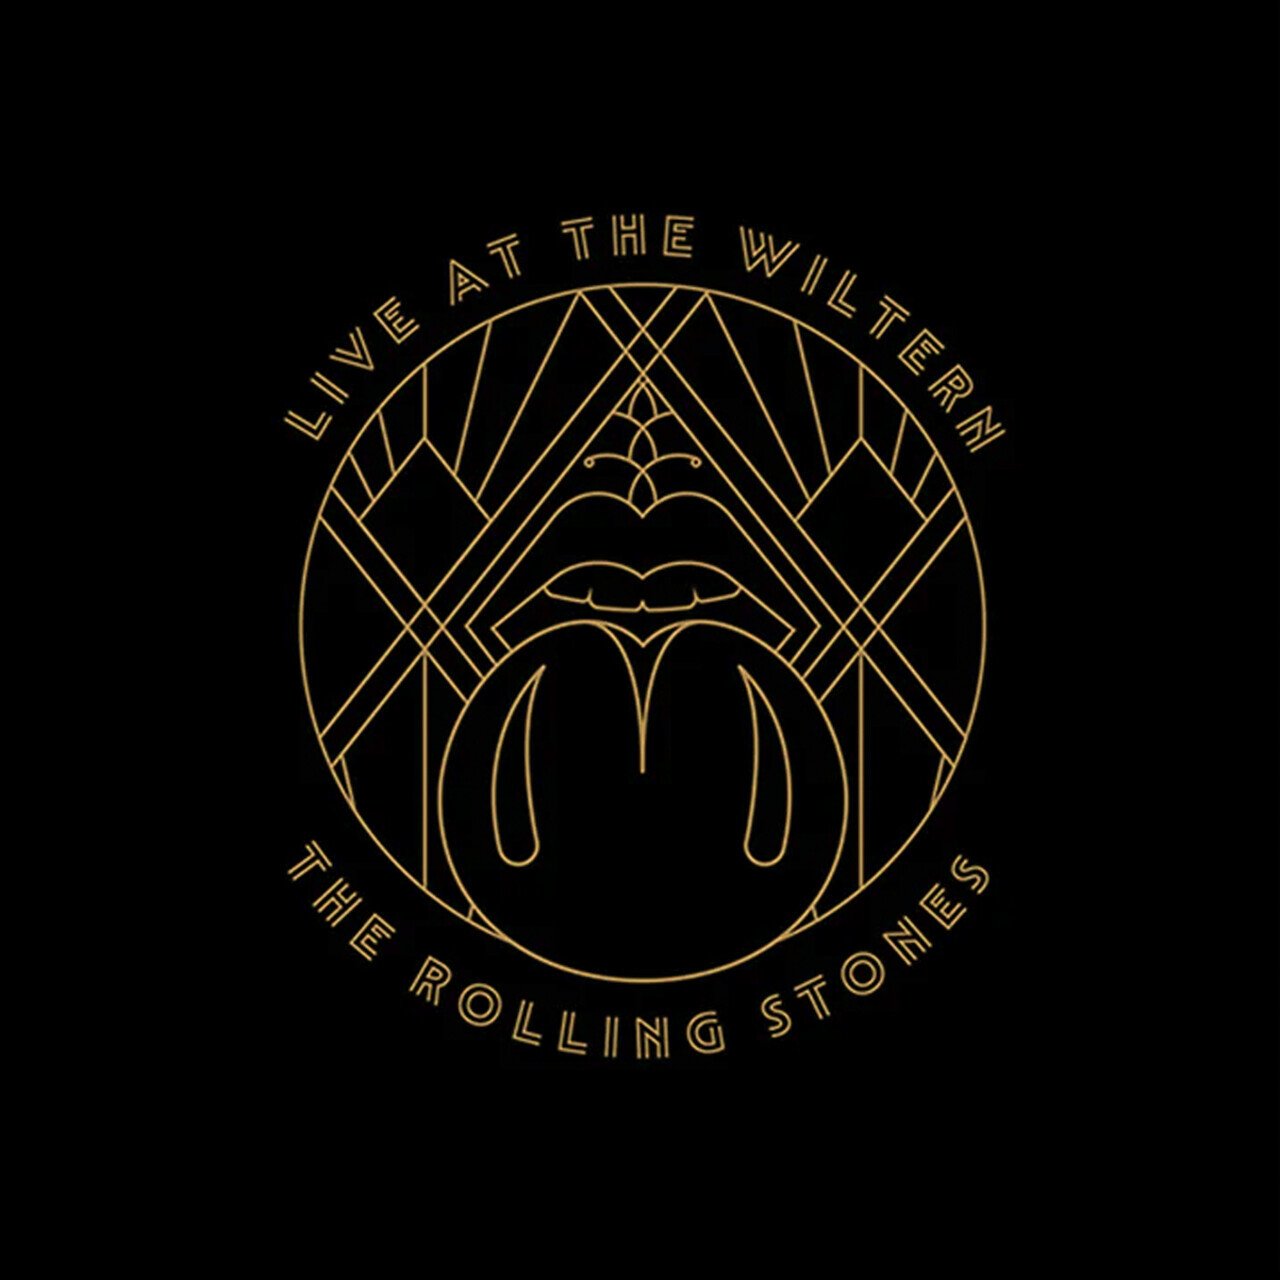 Рок Universal (Aus) Rolling Stones, The - Live At The Wiltern (Black Vinyl 3LP) акафист пресвятой богородице в честь иконы ее неувядаемый